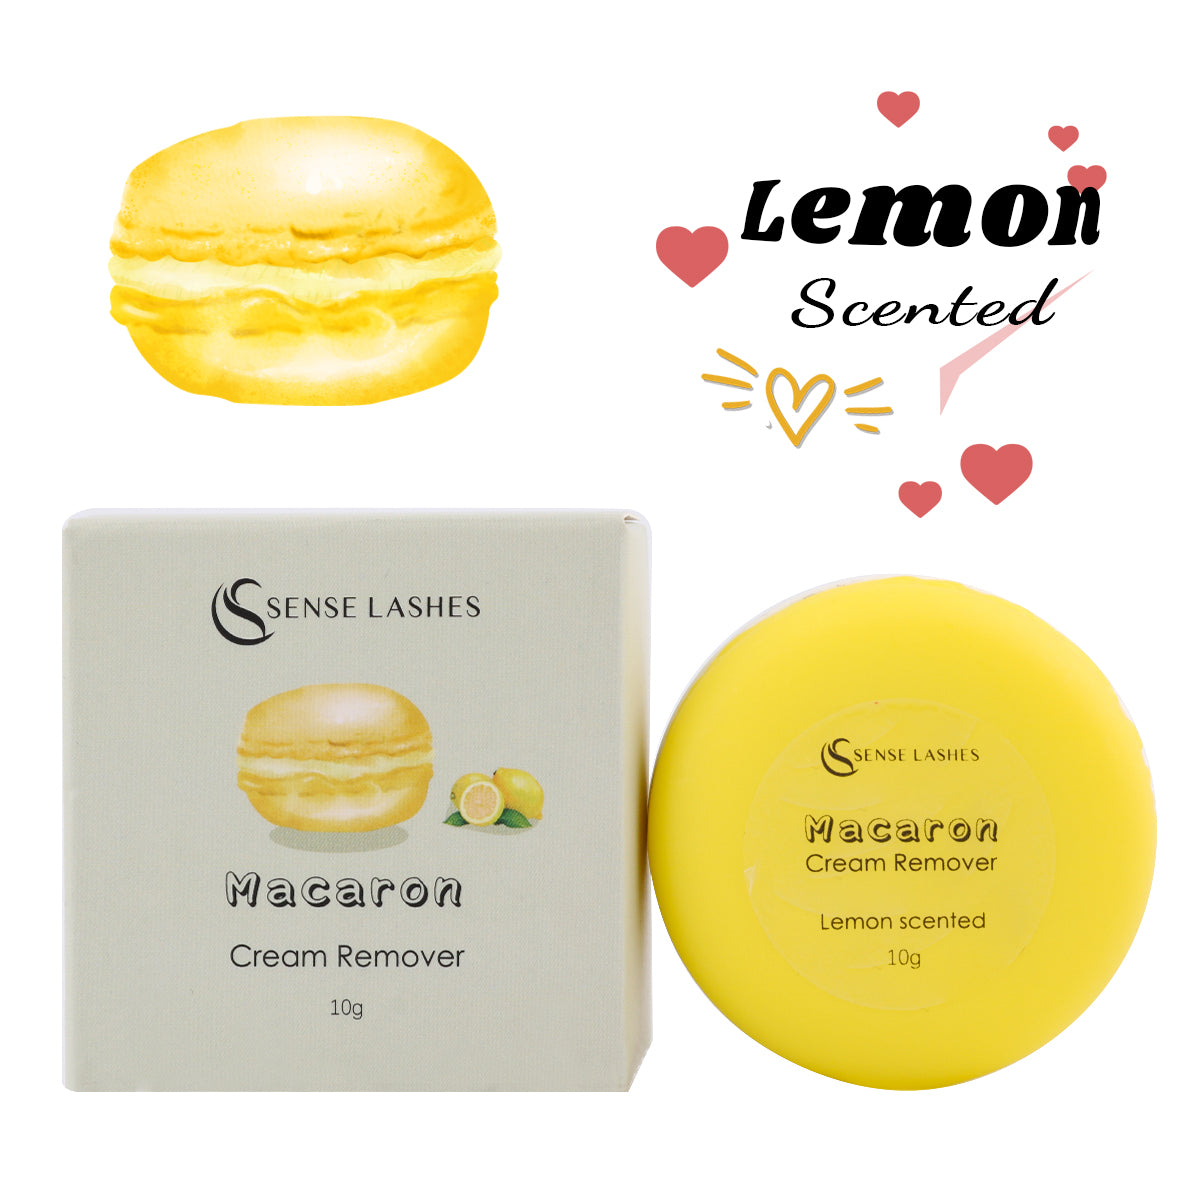 Macaron Cream Remover (10G) - SENSELASHES